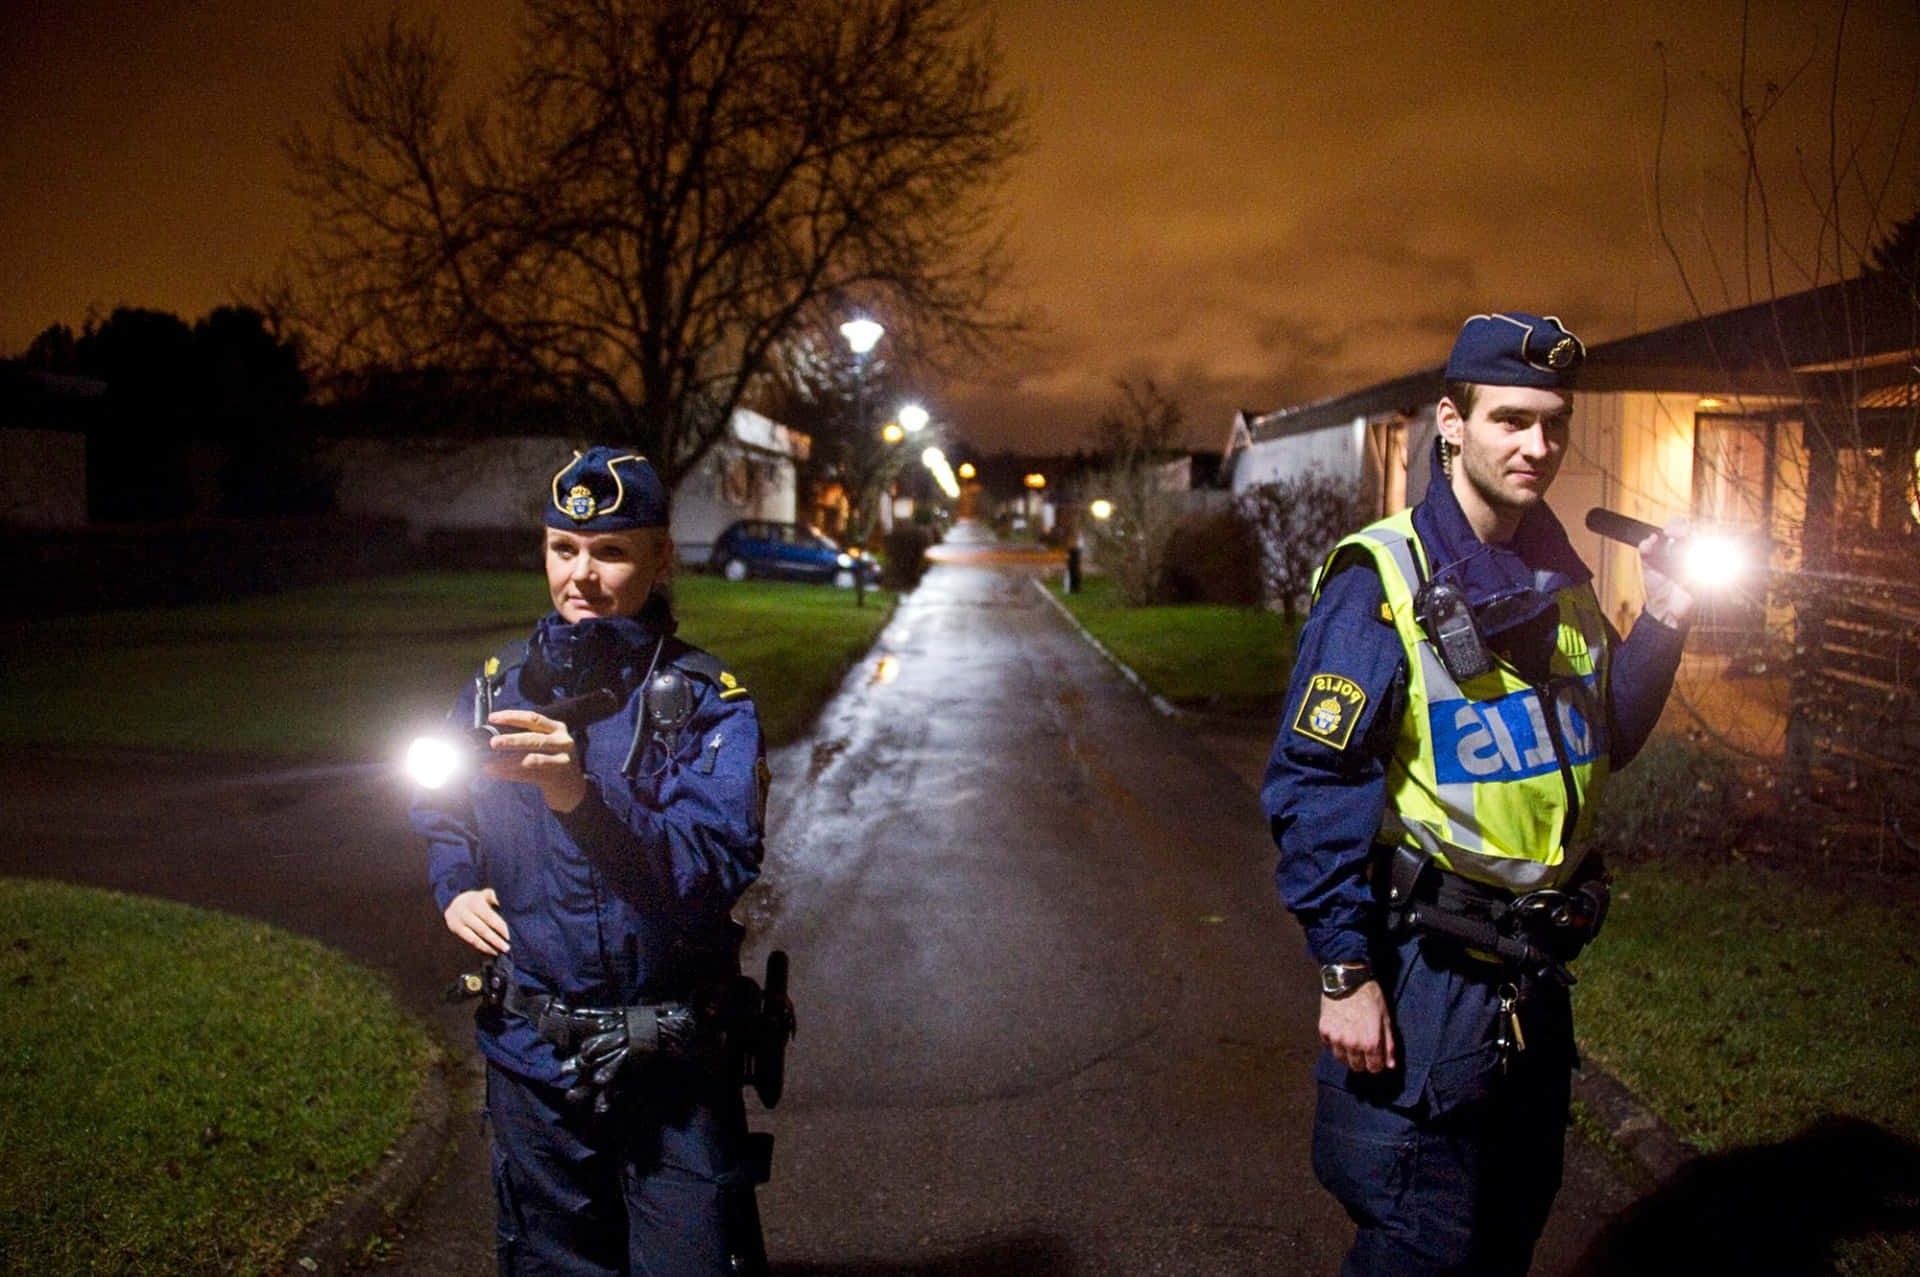 Zweipolizisten Stehen Nachts Auf Einer Straße.